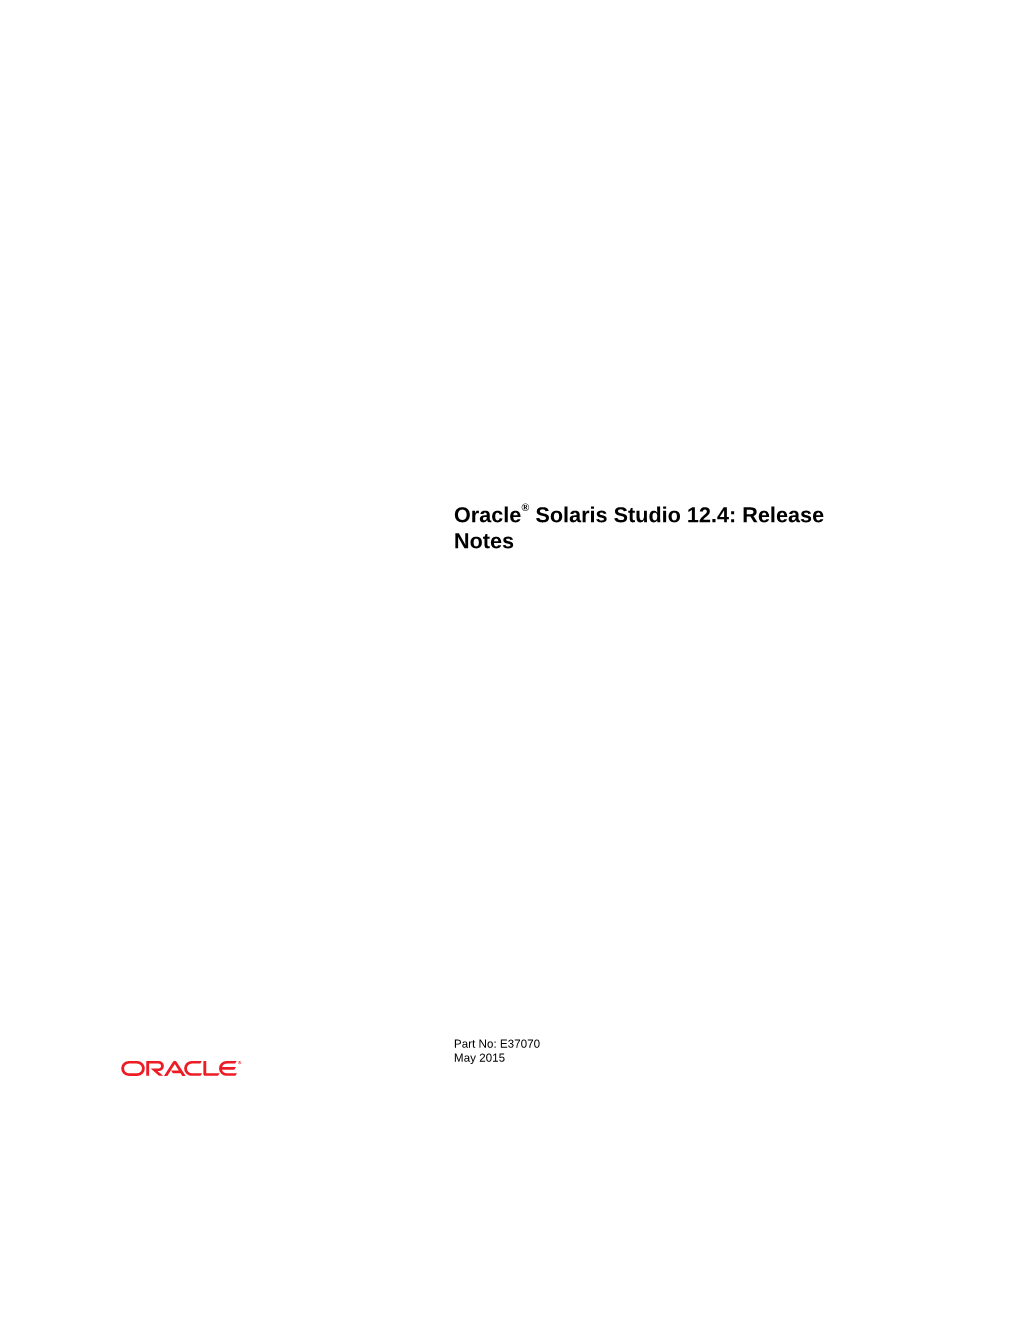 Oracle® Solaris Studio 12.4: Release Notes